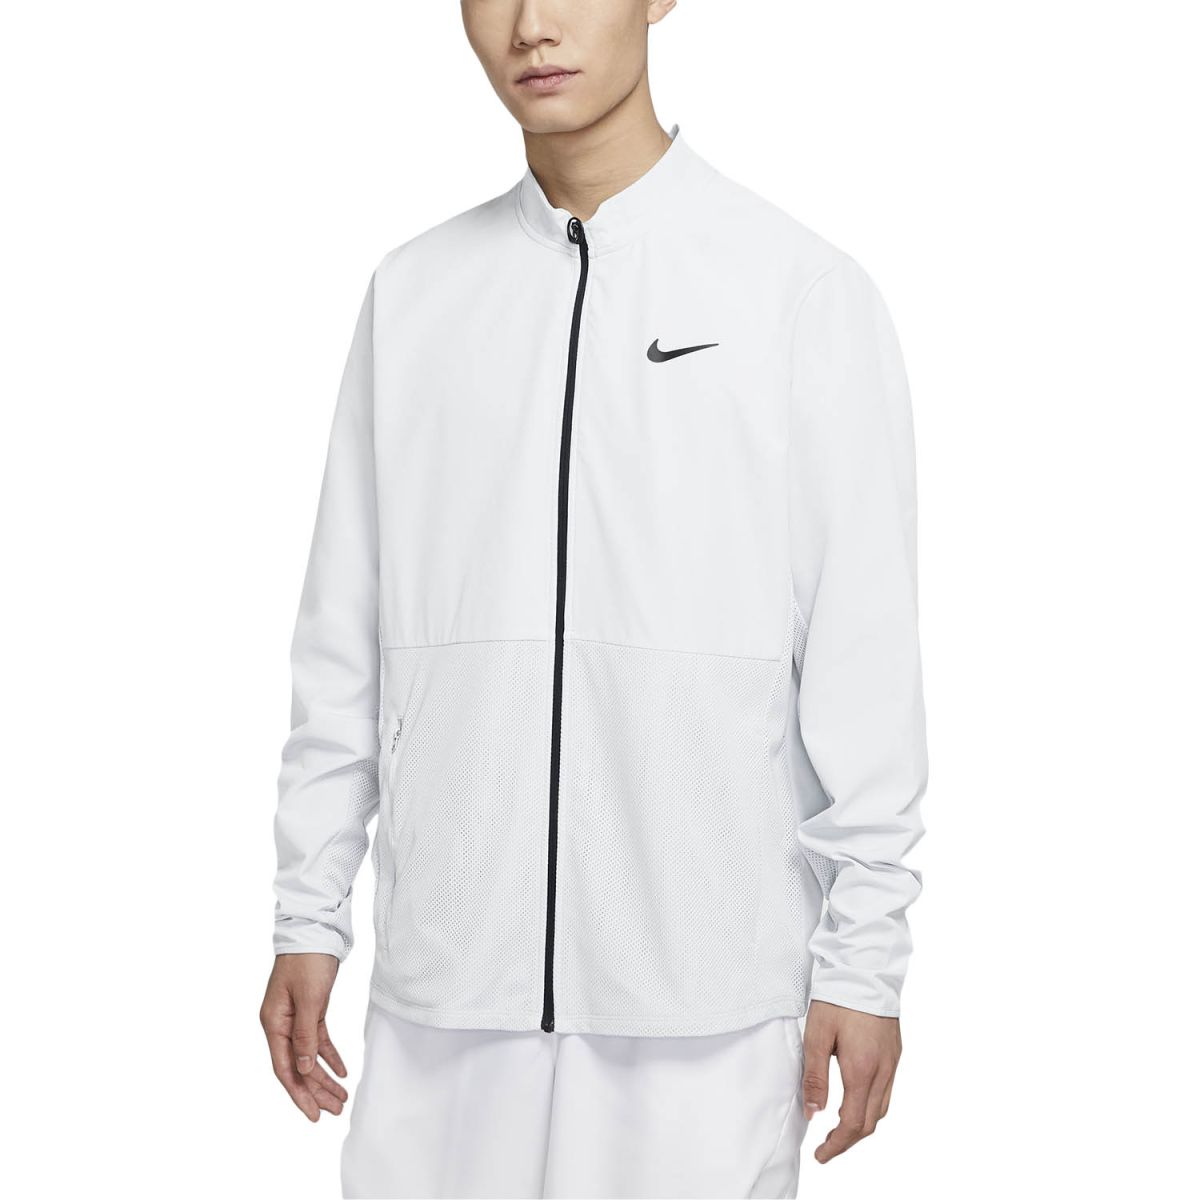 NikeCourt HyperAdapt Advantage Men's Packable Tennis Jacket